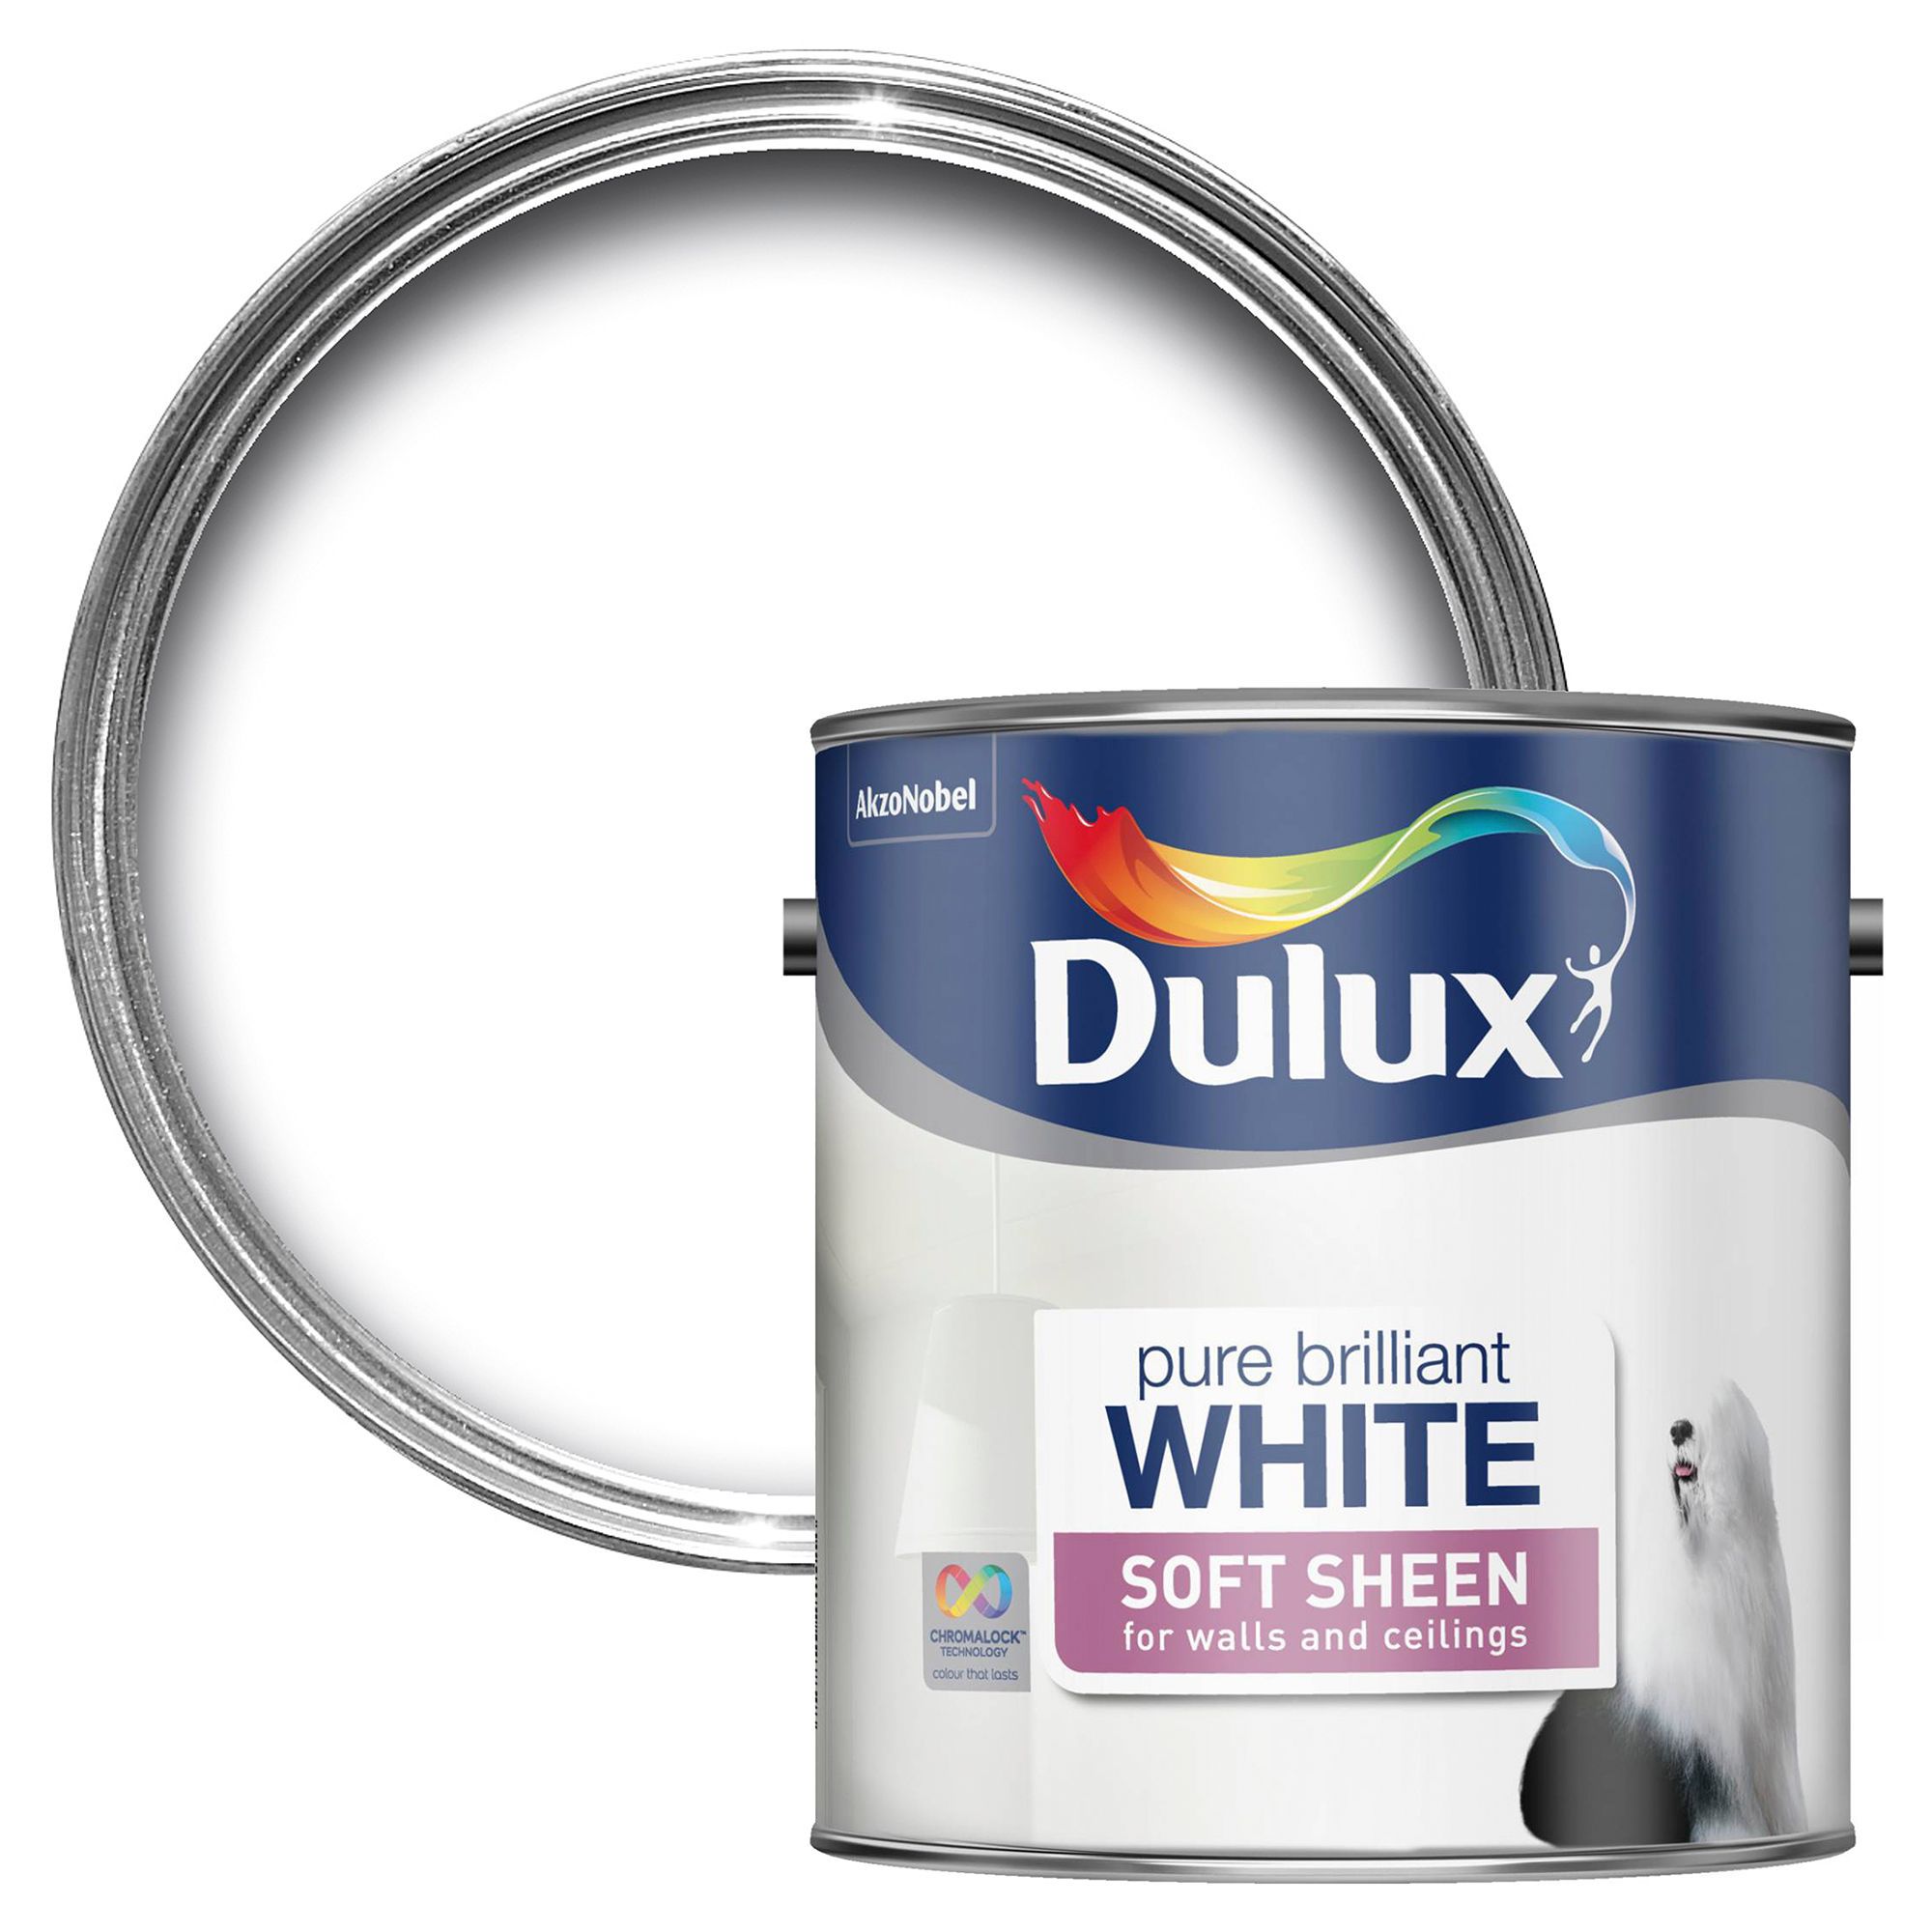  Dulux Pure Brilliant White  Soft Sheen Emulsion Paint 2 5L 